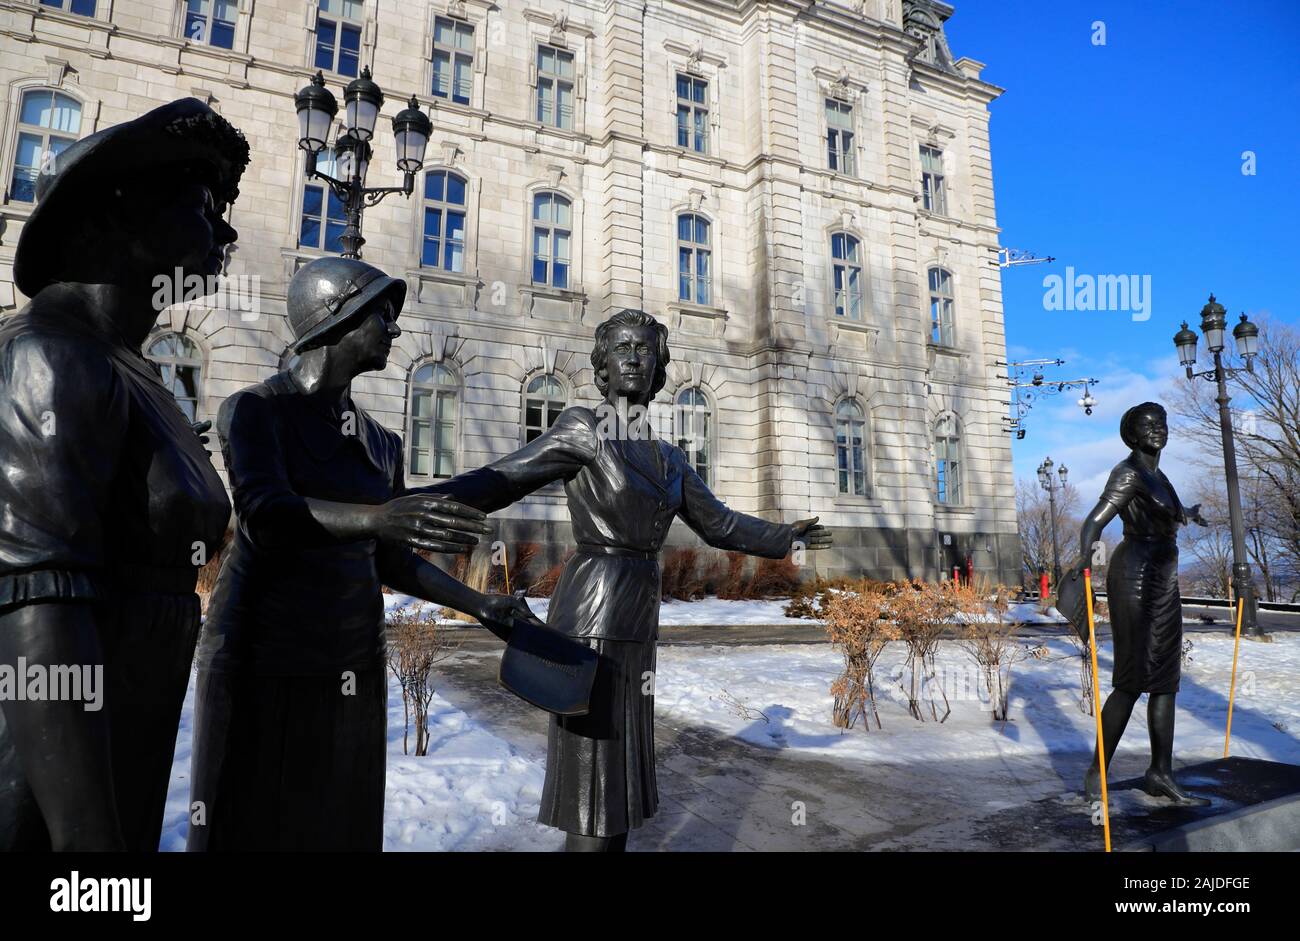 Le monument en hommage aux femmes en politique par le sculpteur Jules Lasalle rend hommage aux femmes qui ont joué un rôle important dans la promotion du droit des femmes à l'extérieur de l'édifice du Parlement de Québec.La ville de Québec. Québec.Canada Banque D'Images